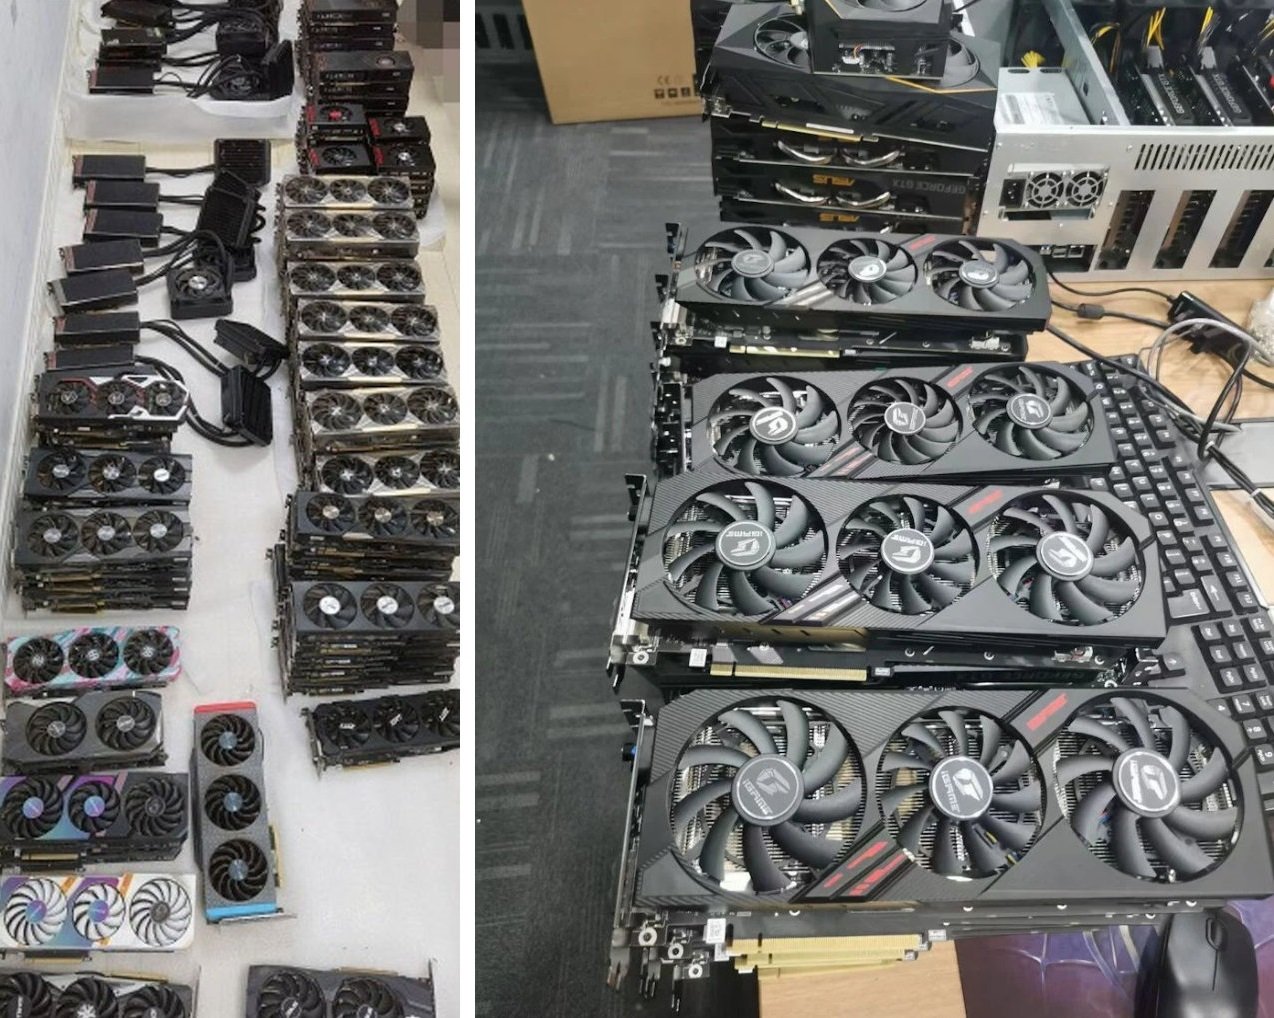 Китайские майнеры наводнили рынок дешёвыми видеокартами — GeForce RTX 3060 можно найти за $270